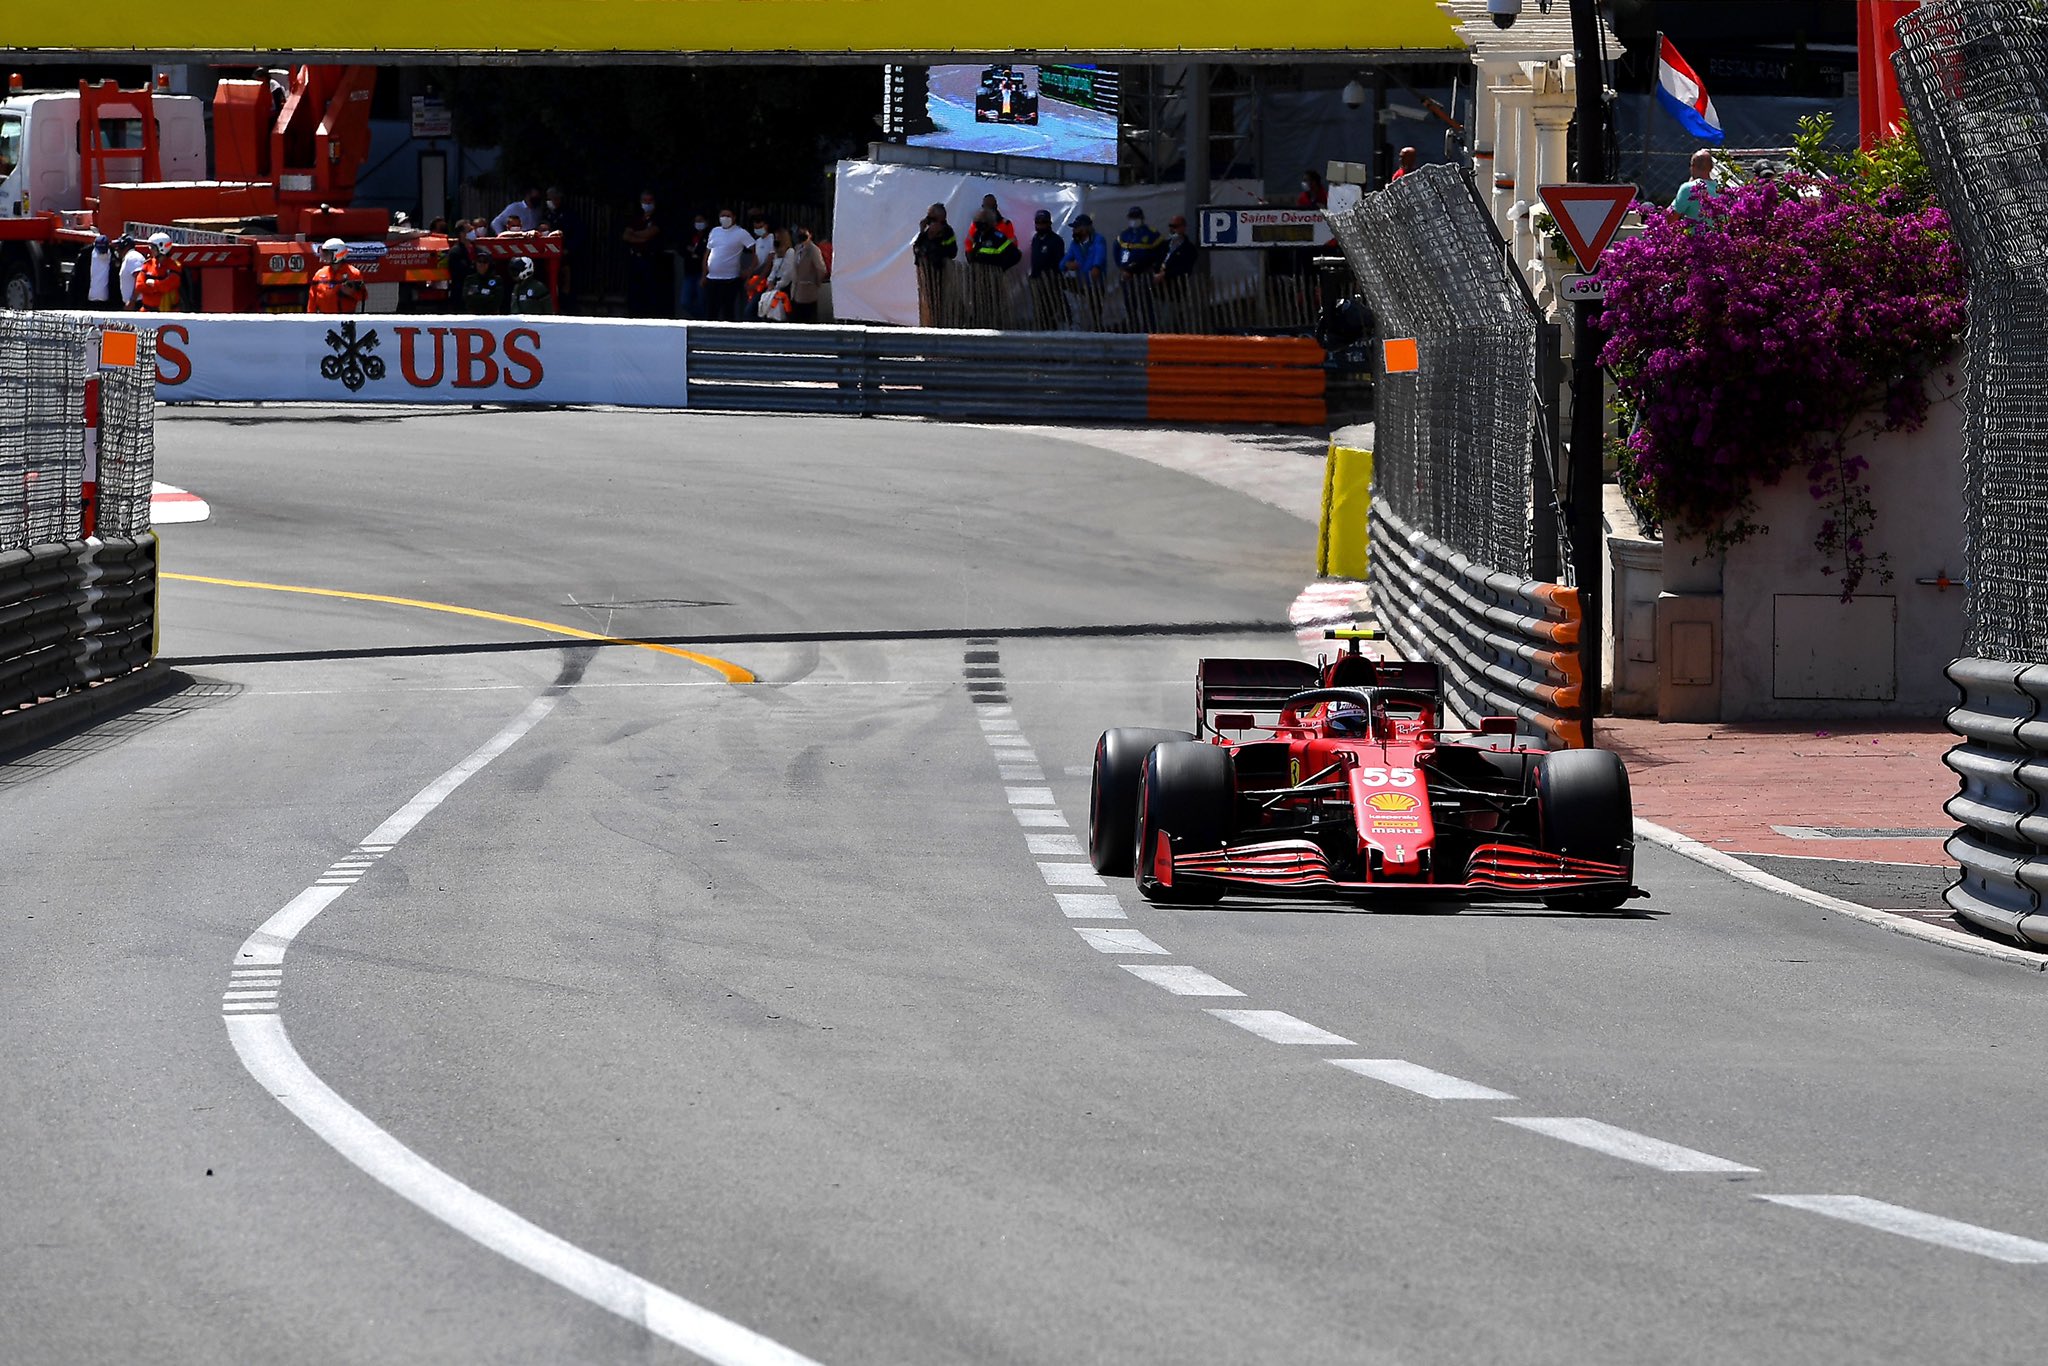 Gp Monaco 2021 - Analisi Strategica: Ferrari gioca bene le carte con Sainz